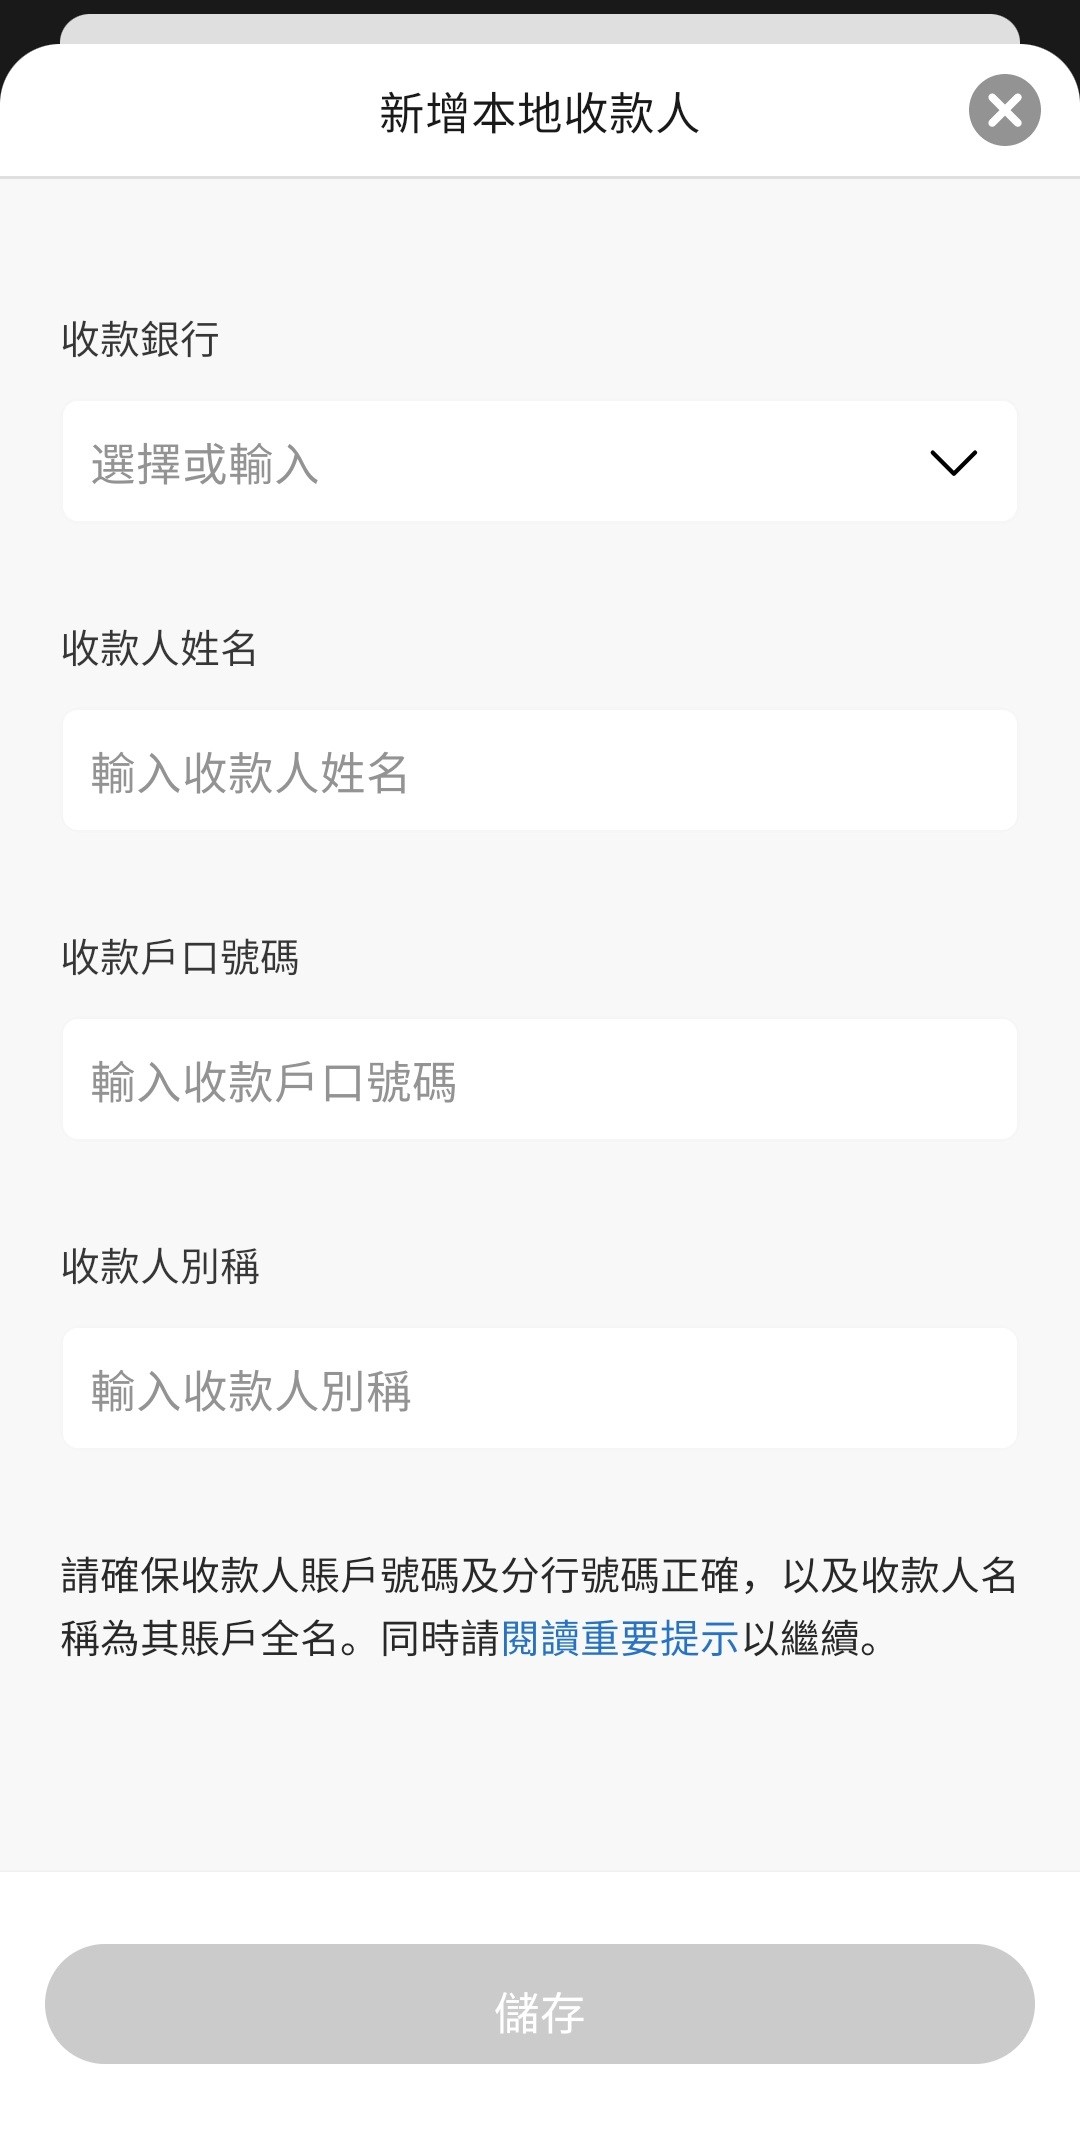 登入SC Mobile App 並以10位數字WeChat Pay HK賬戶號碼新增本地戶口收款人